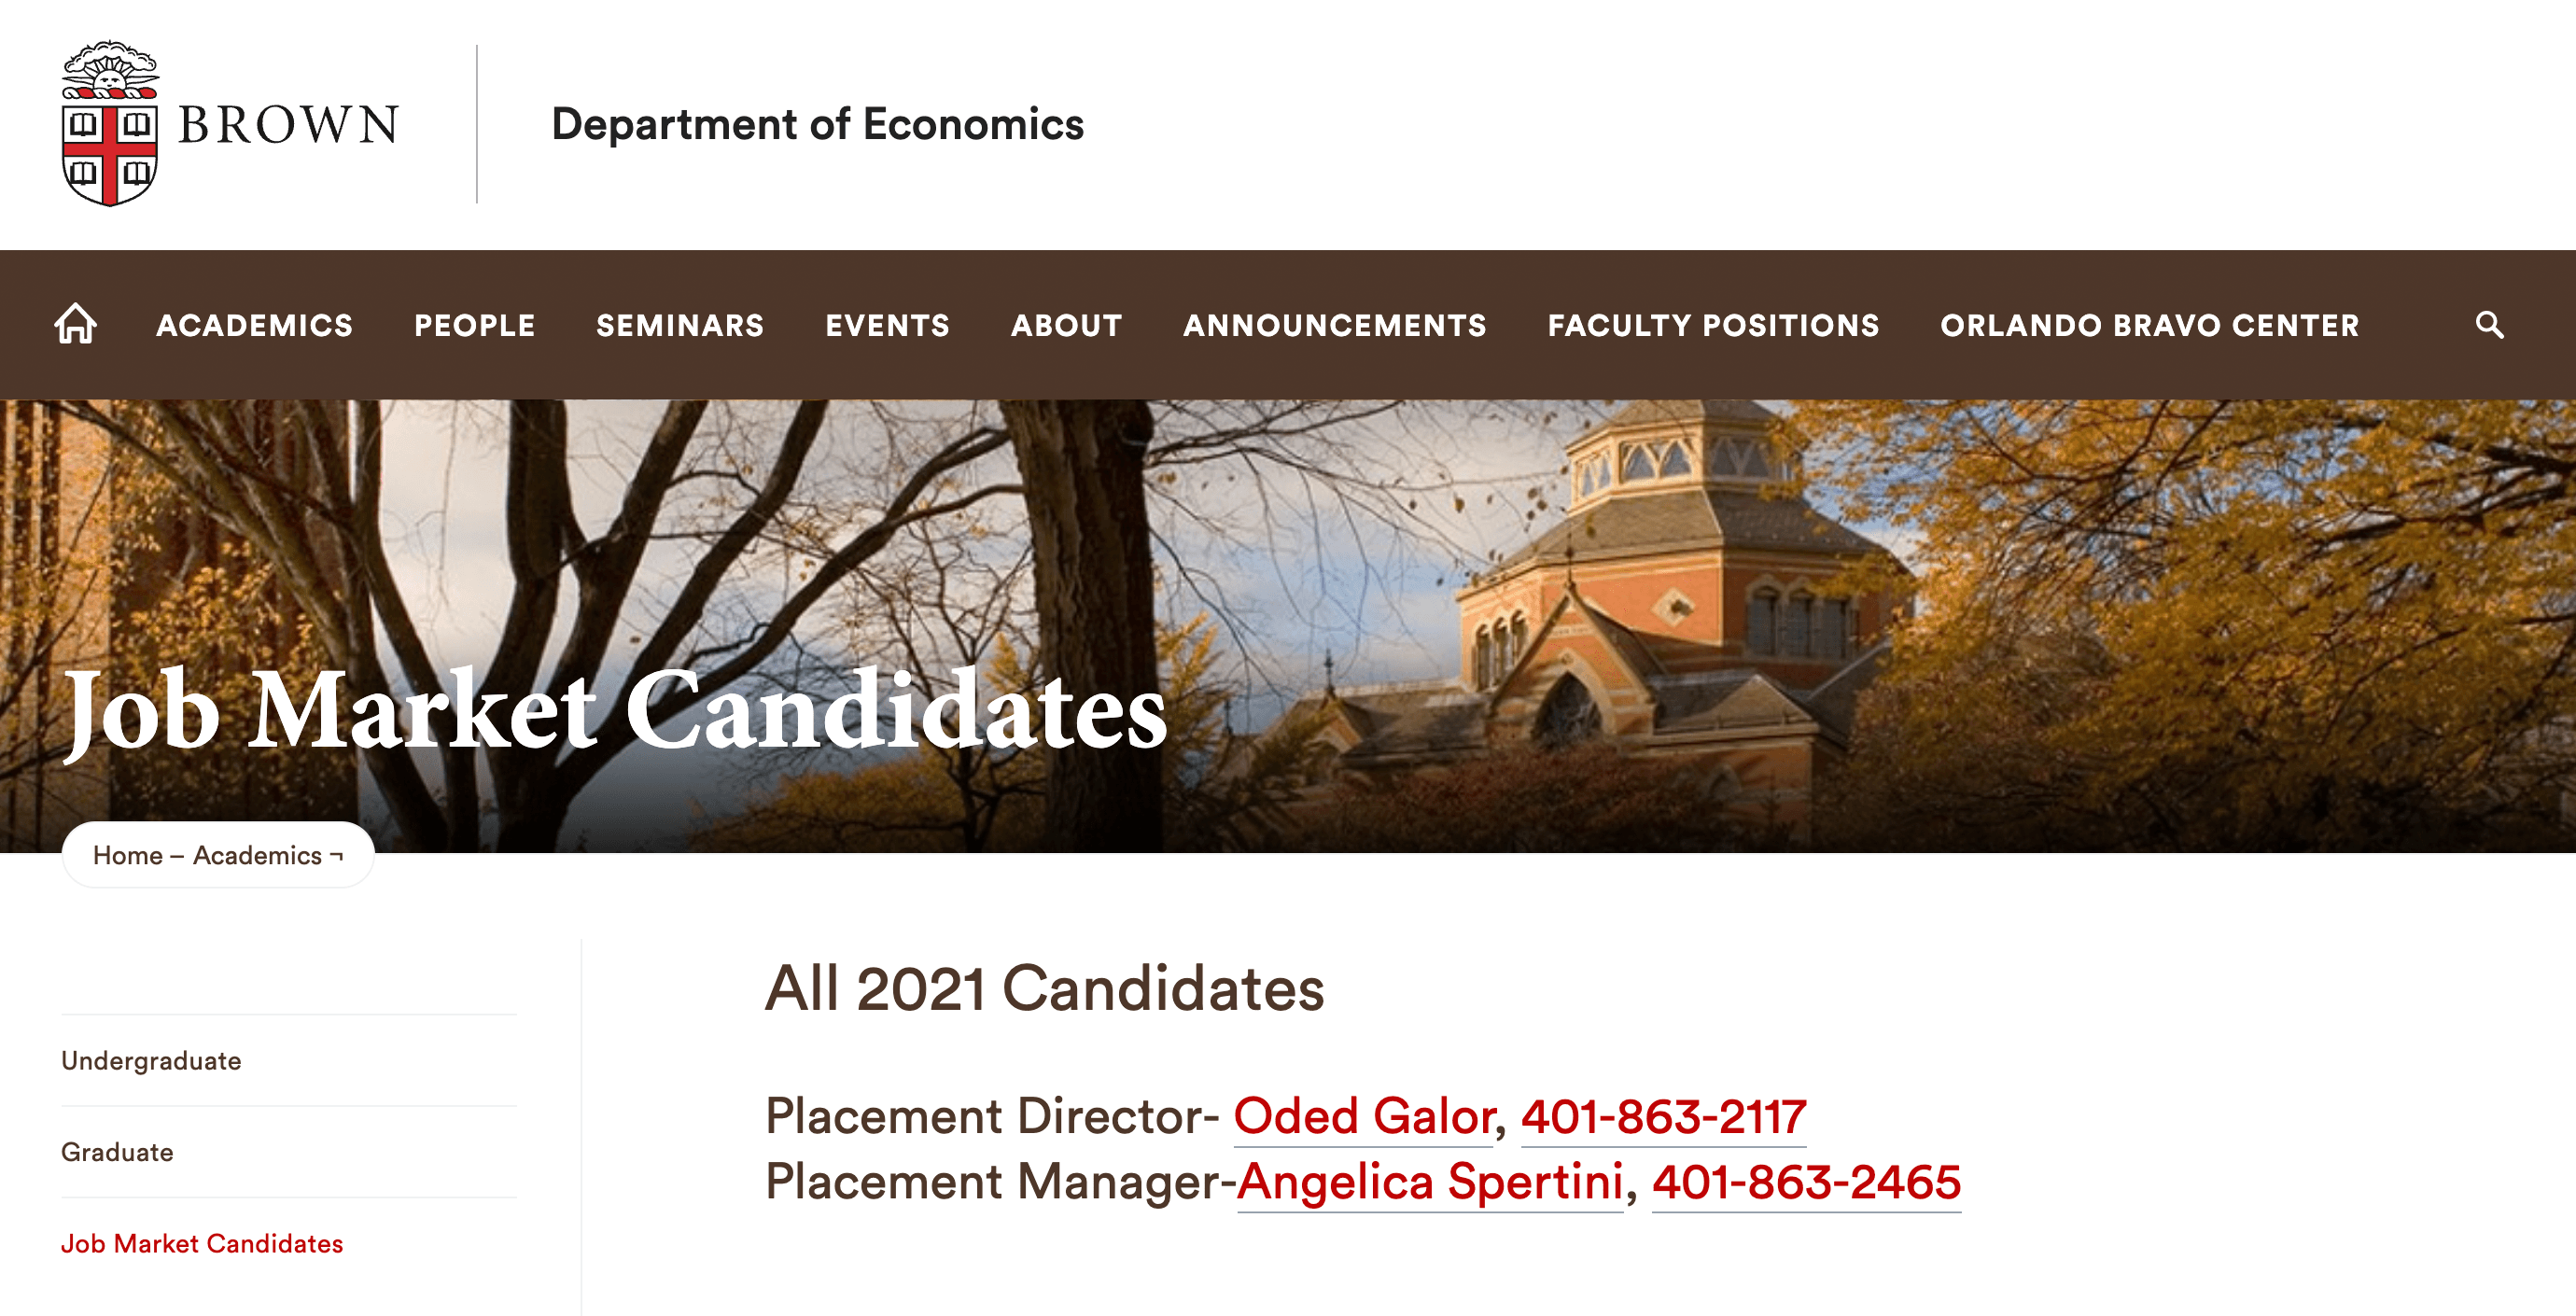 Здесь кафедра экономики Брауновского университета перечисляет своих аспирантов, которые будут выпускаться в этом году, и предоставляет CV каждого из них